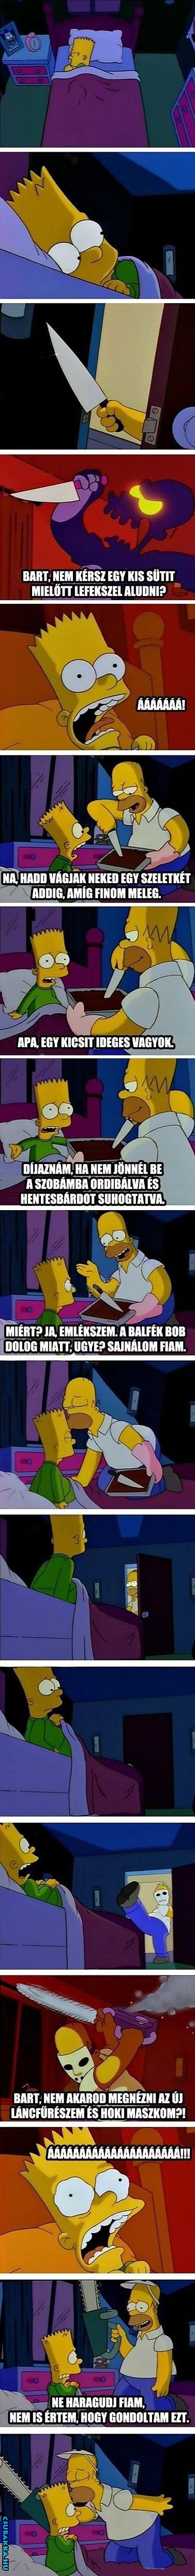 Homer jó apa homer képeregény Bart Képek Simpson család